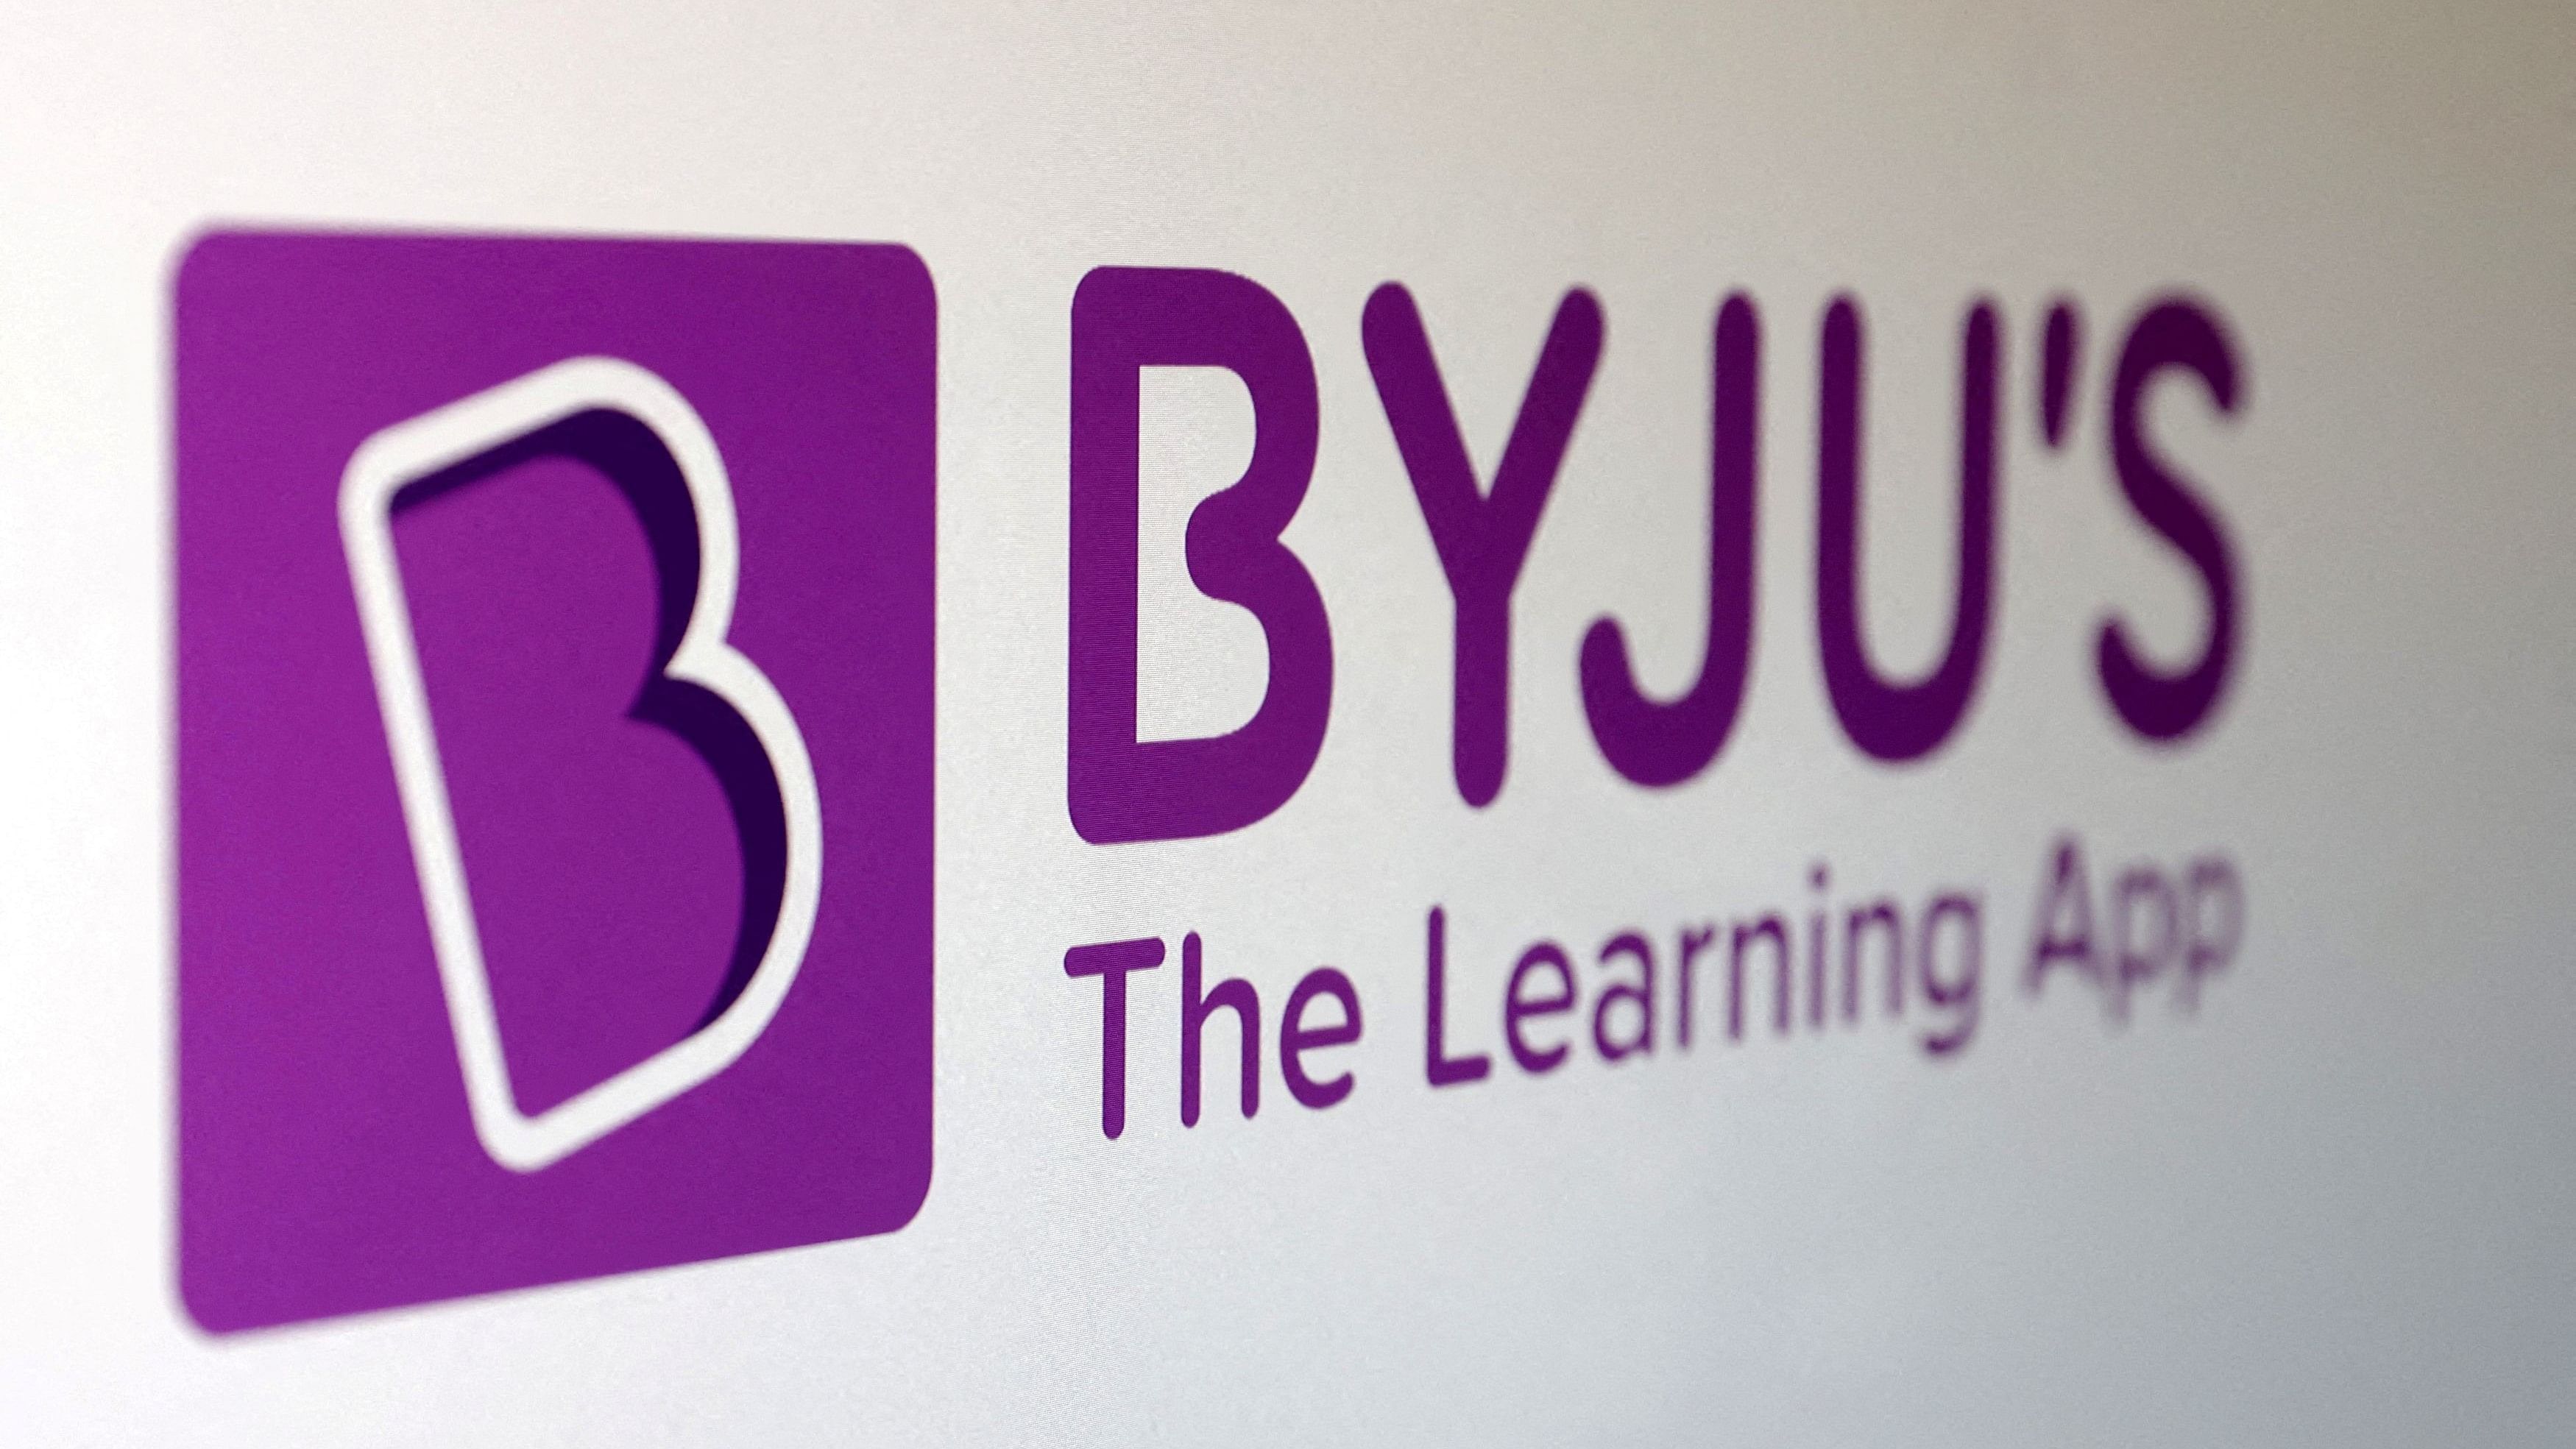 <div class="paragraphs"><p>The logo of Byju's.</p></div>